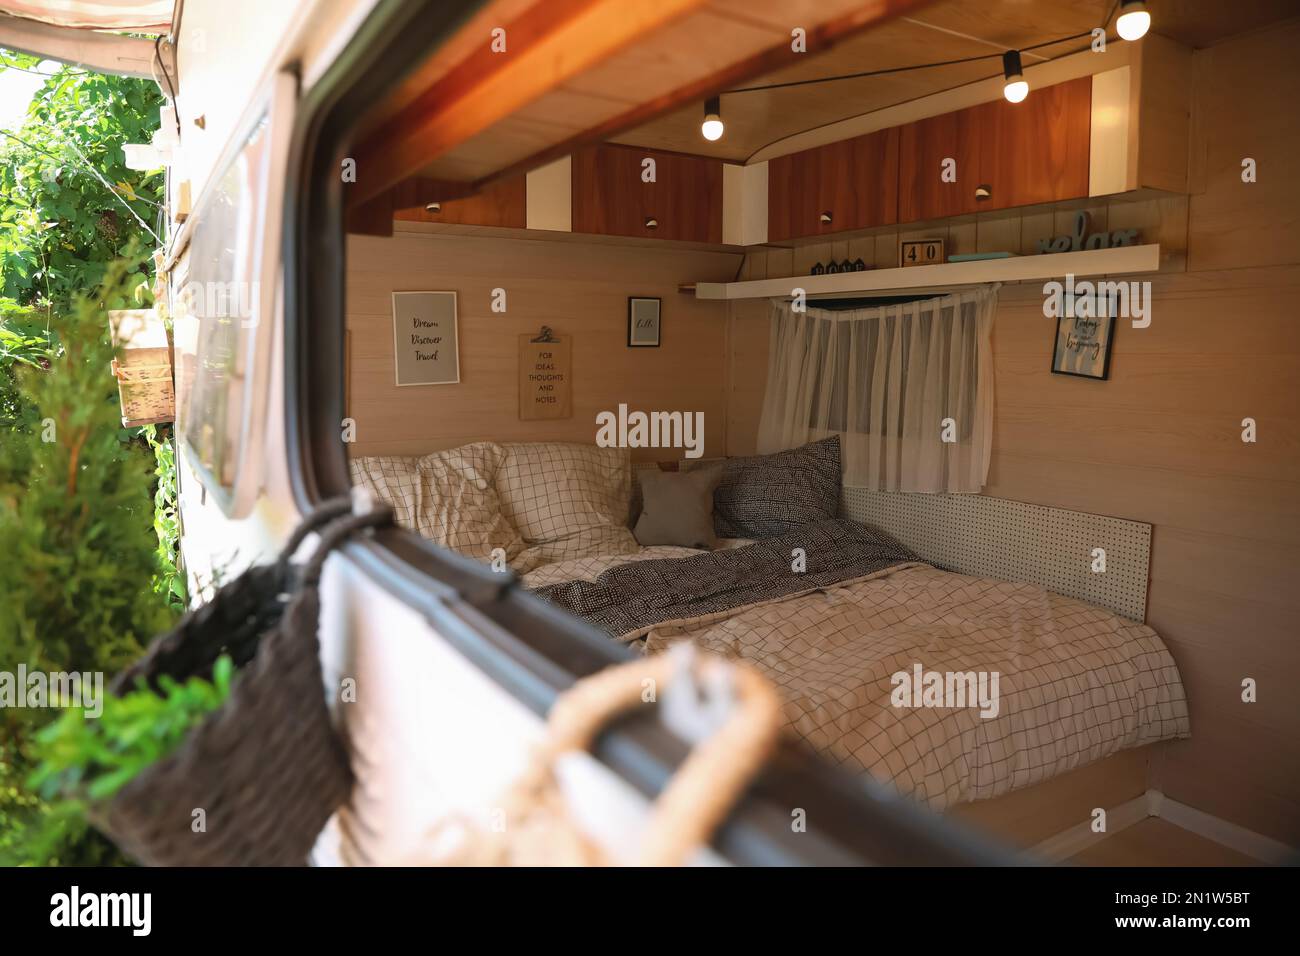 Stilvolle Einrichtung mit komfortablem Bett und Kissen in einem modernen  Wohnwagen, Blick von außen. Campingurlaub Stockfotografie - Alamy